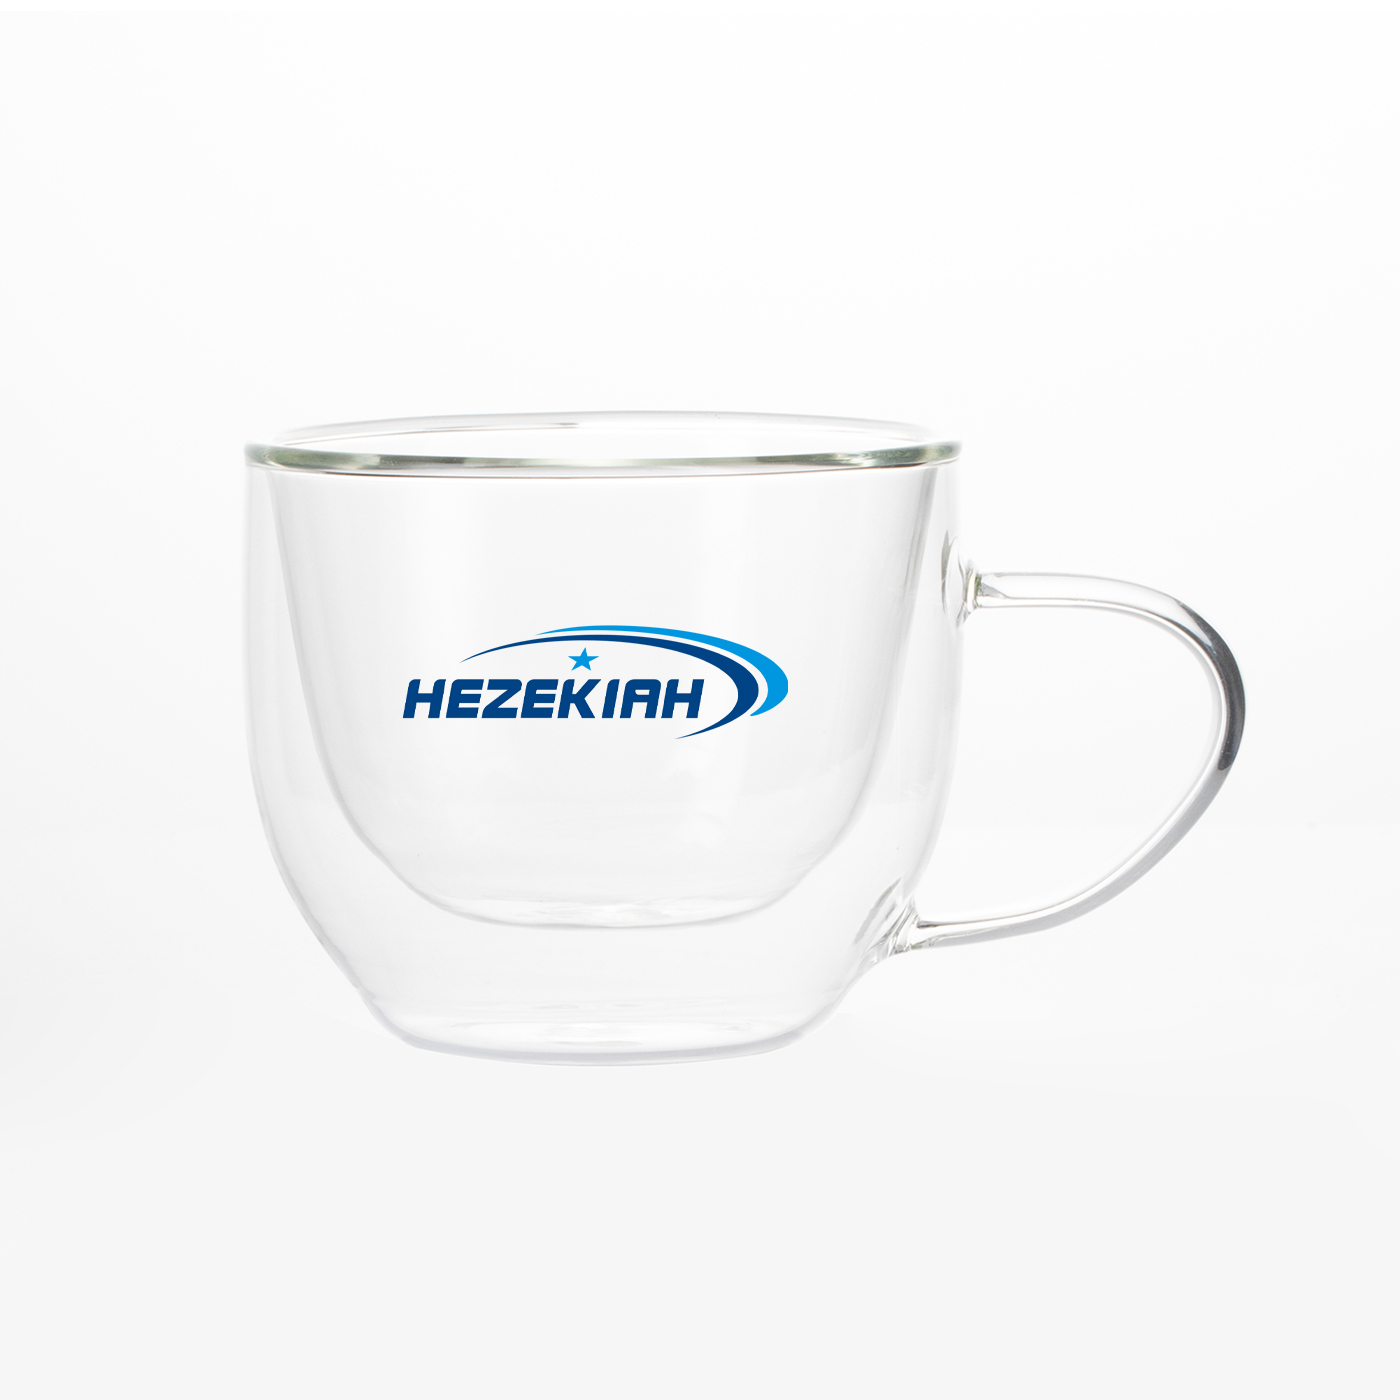 8 oz. Double-layer Glass Mug With Handle